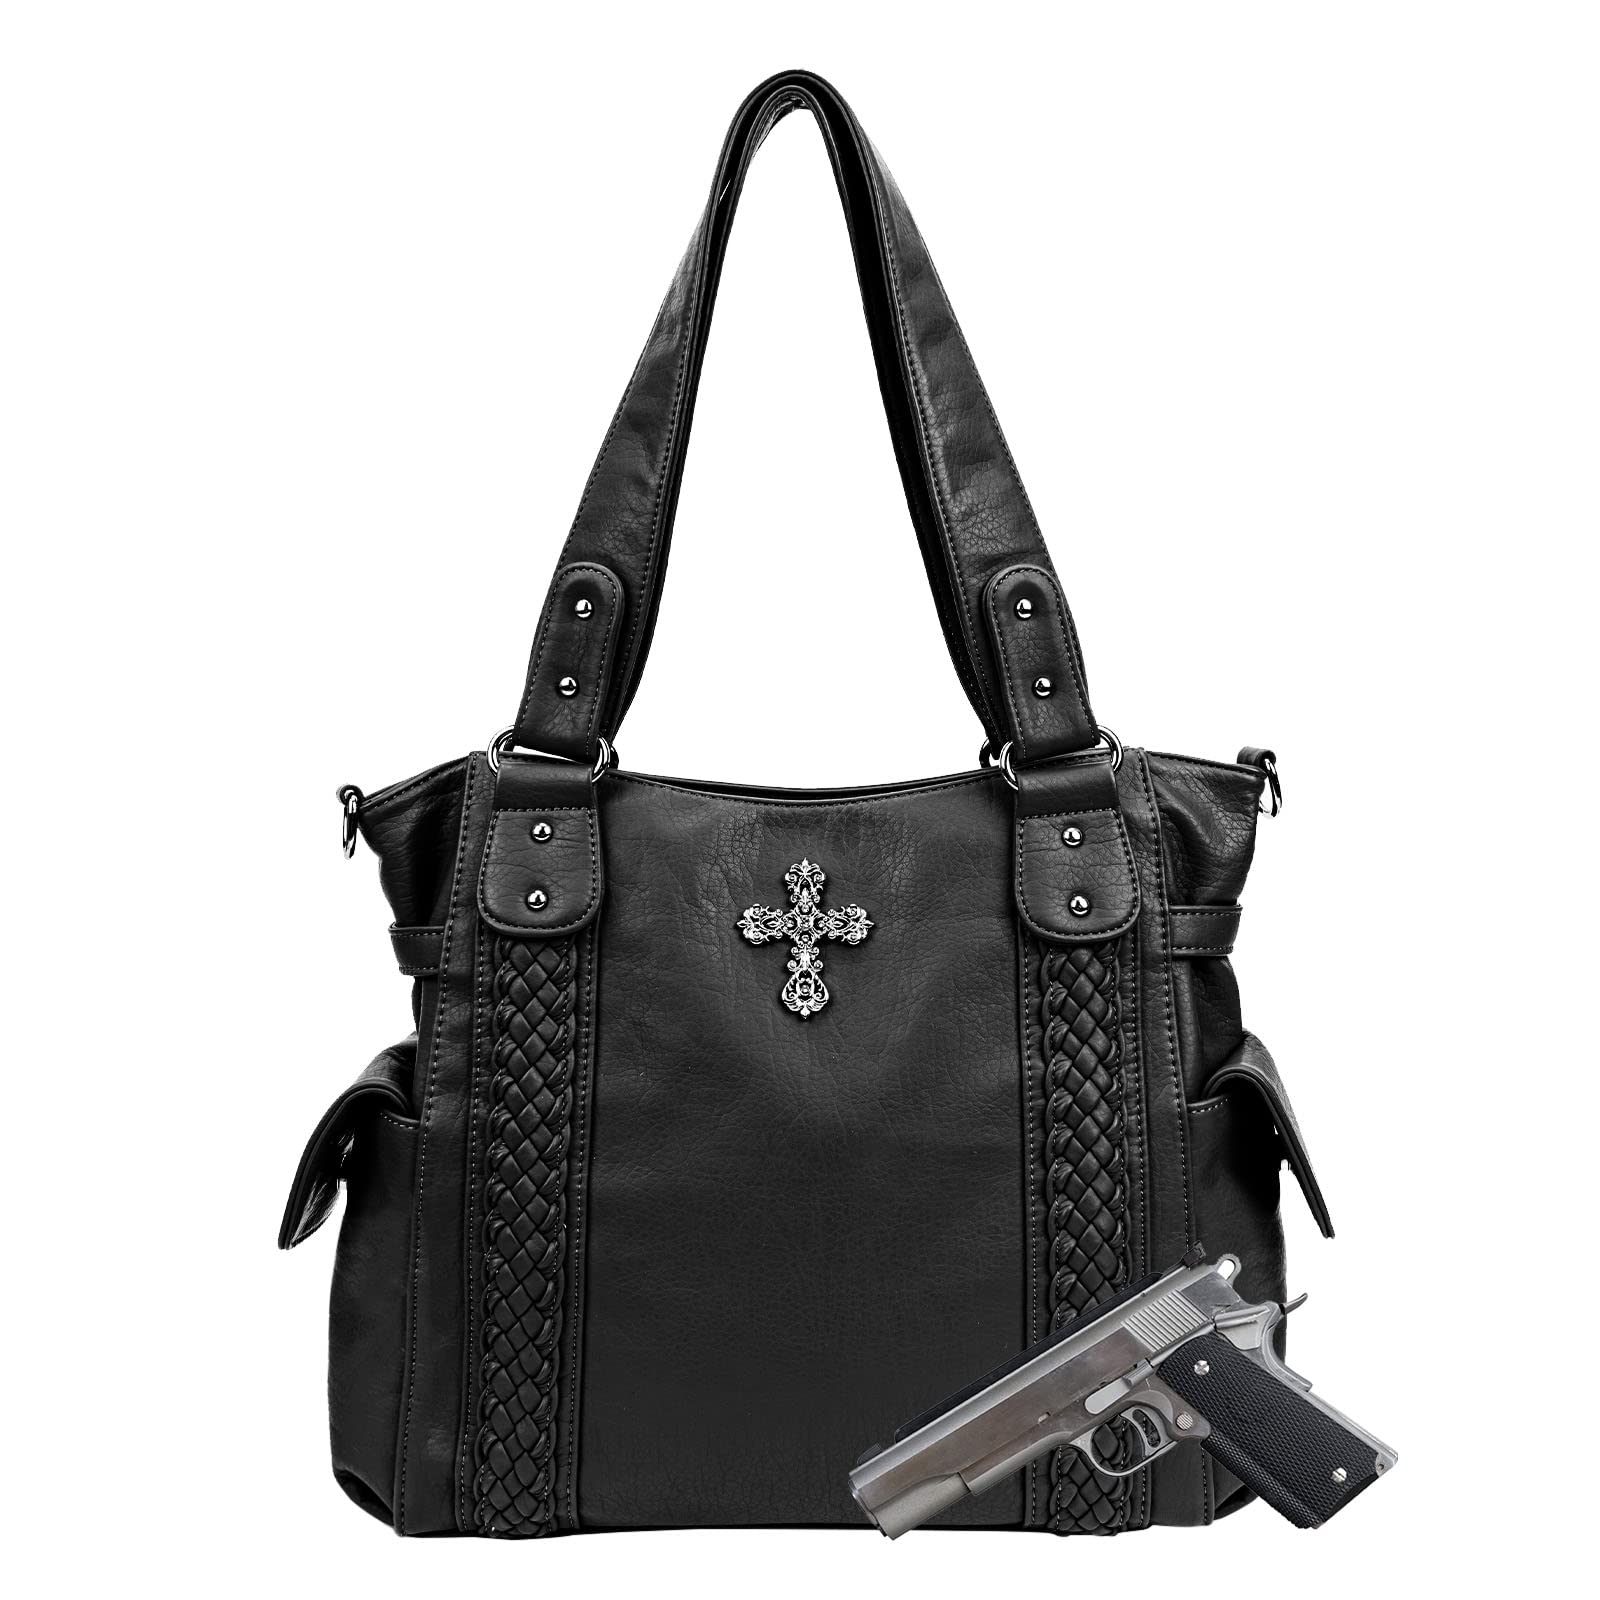 送料無料CELELA Conceal Carry Purses for Women Large Tote and Shoulder Bag with Cross Western Style Handbags Washed Leathe